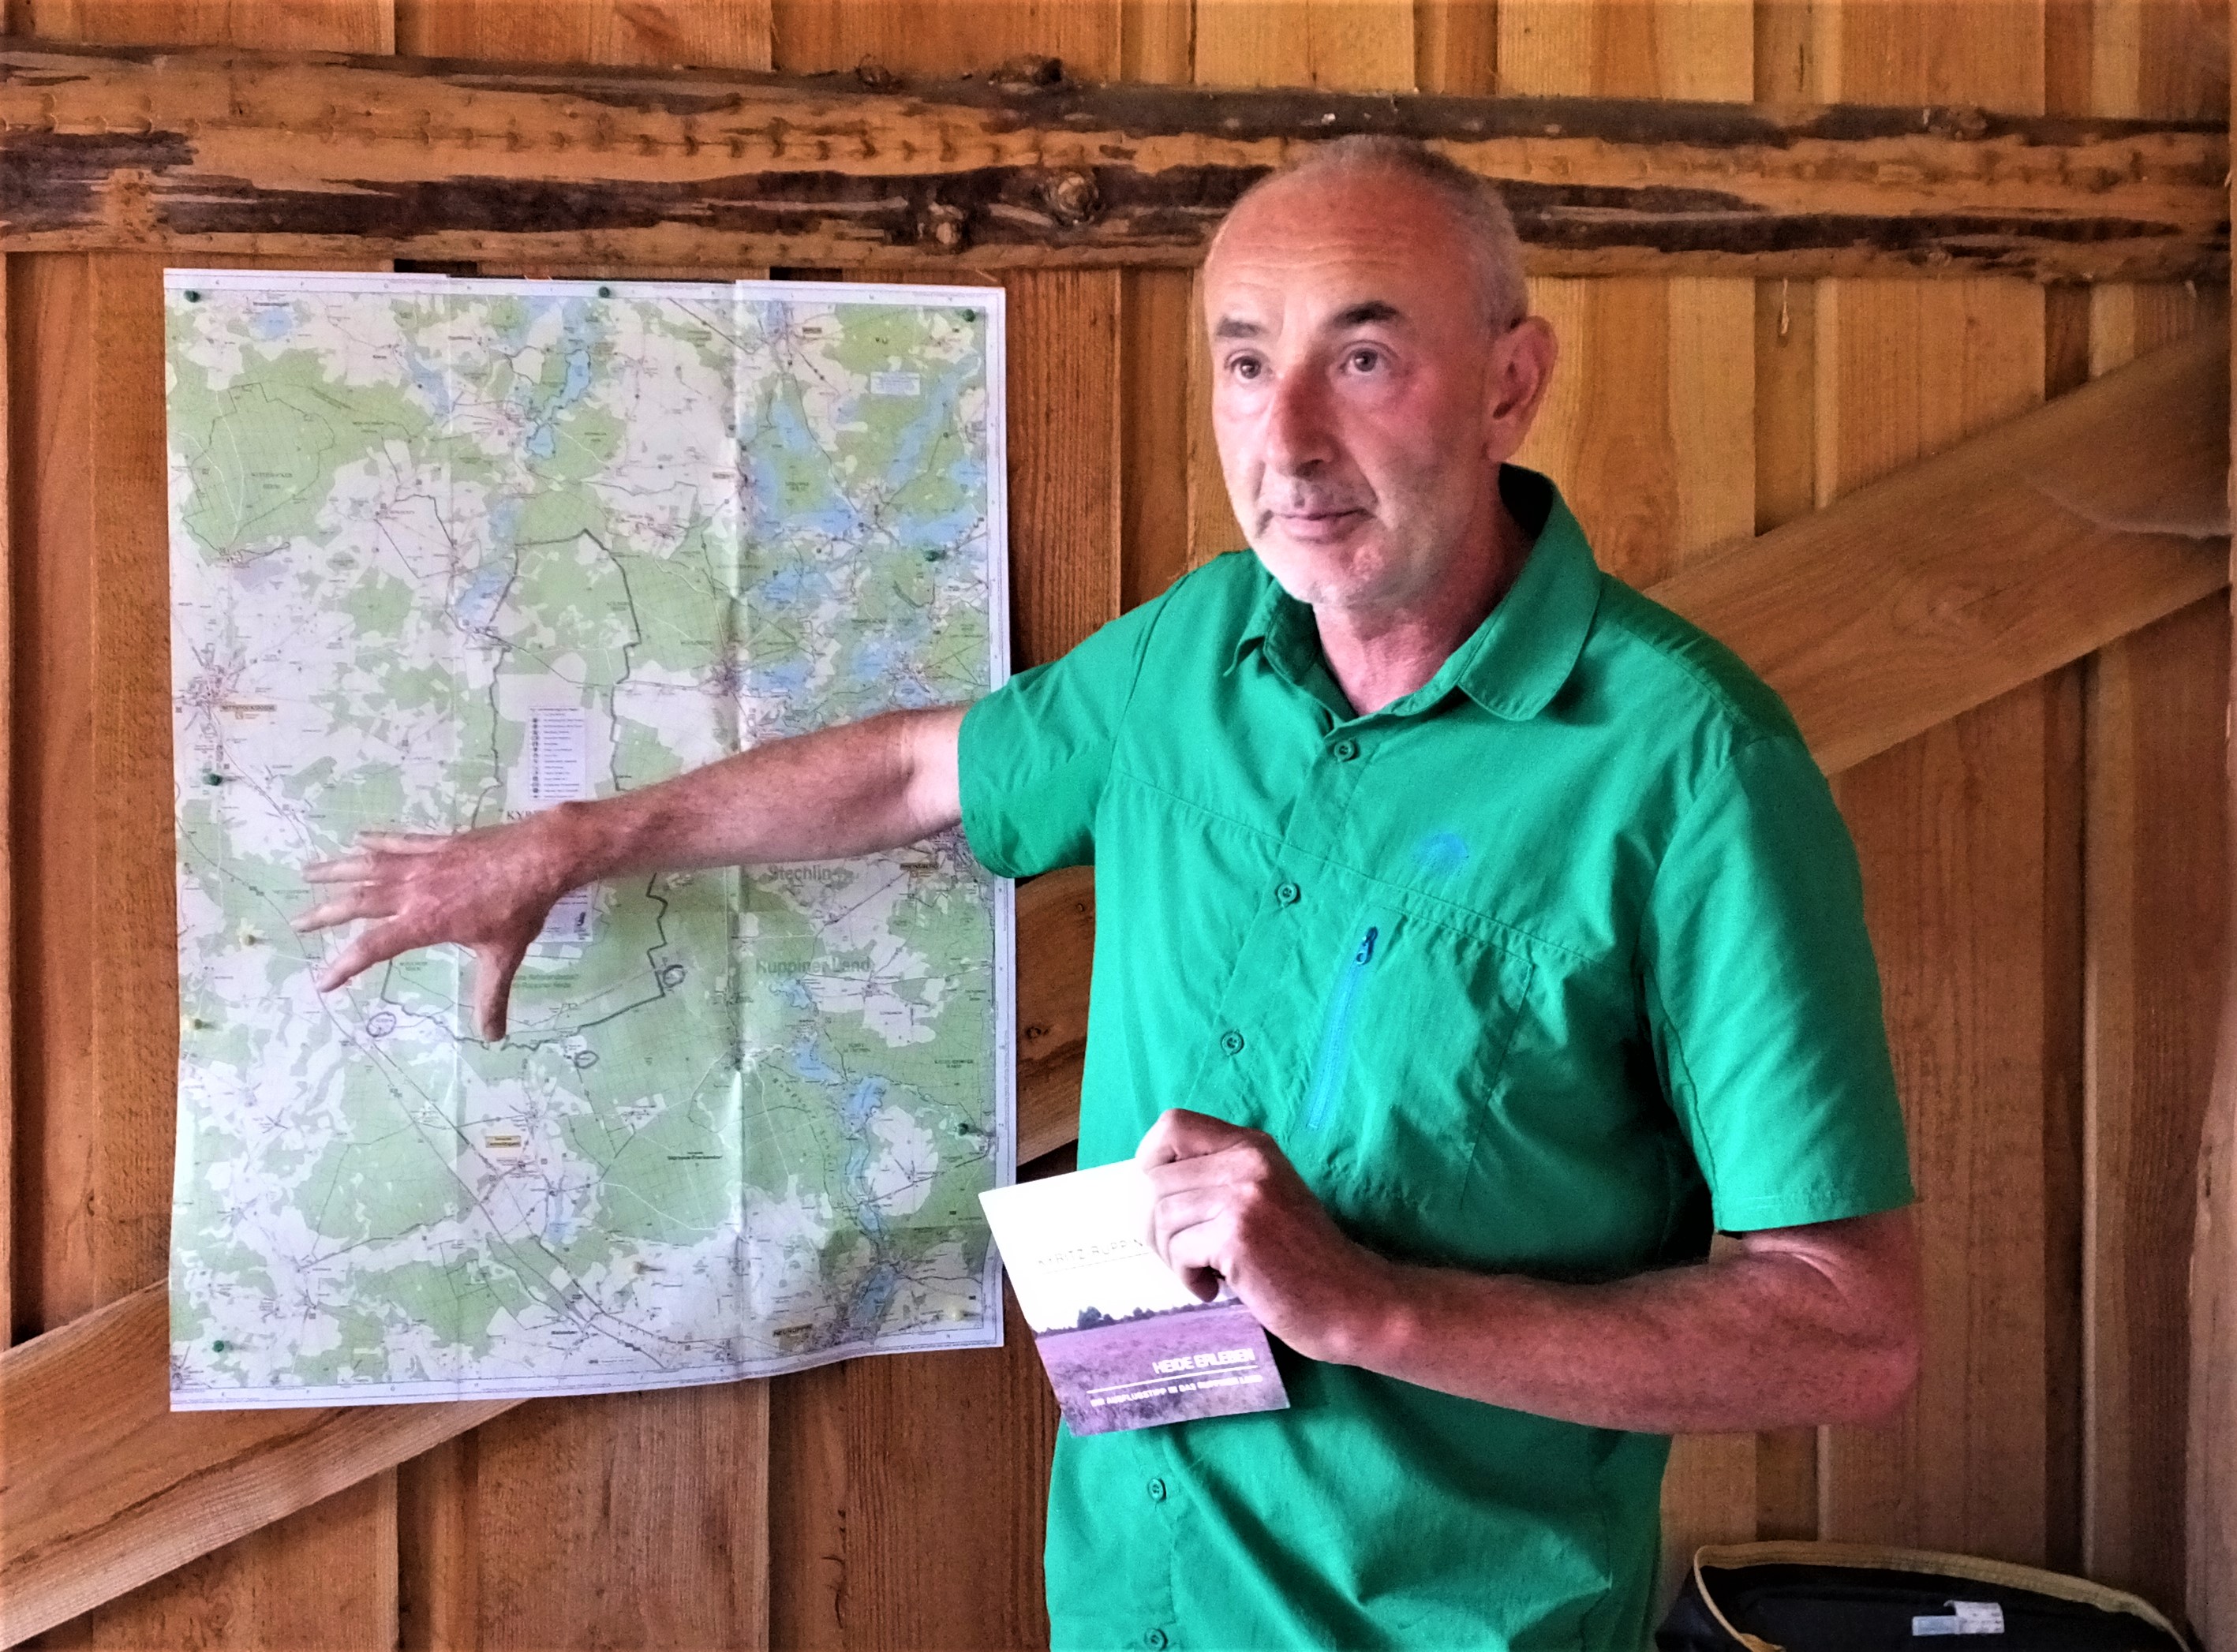 Natur- und Landschaftsführer Olaf Wolff erläutert den Besuchern am Parkplatz Pfalzheim die Kyritz-Ruppiner Heide.

